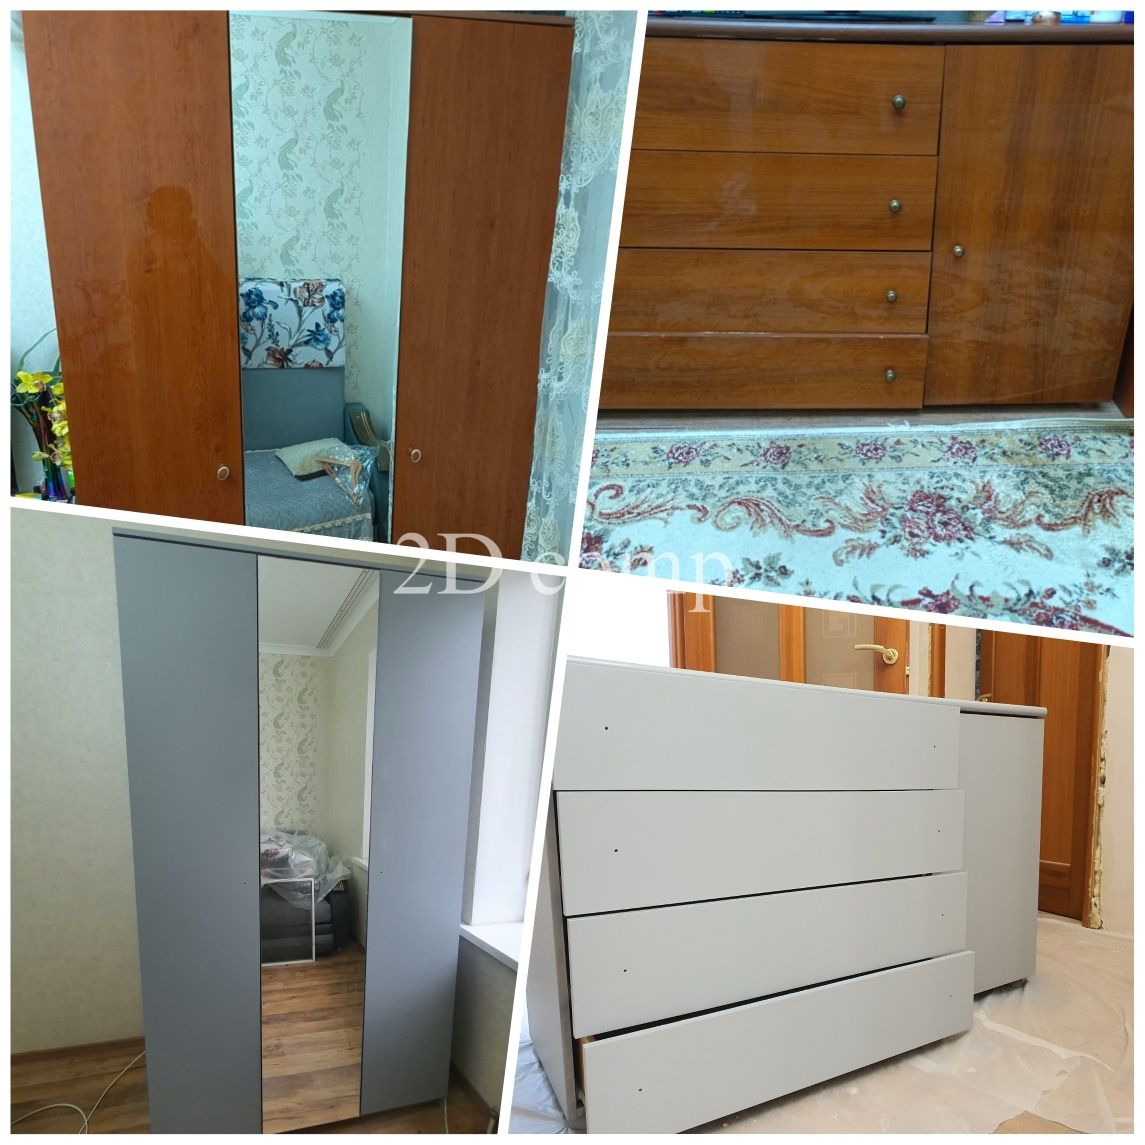 Реставрация мебели, двери, шкаф, спальной, кухонной гарнитуры, прихожи